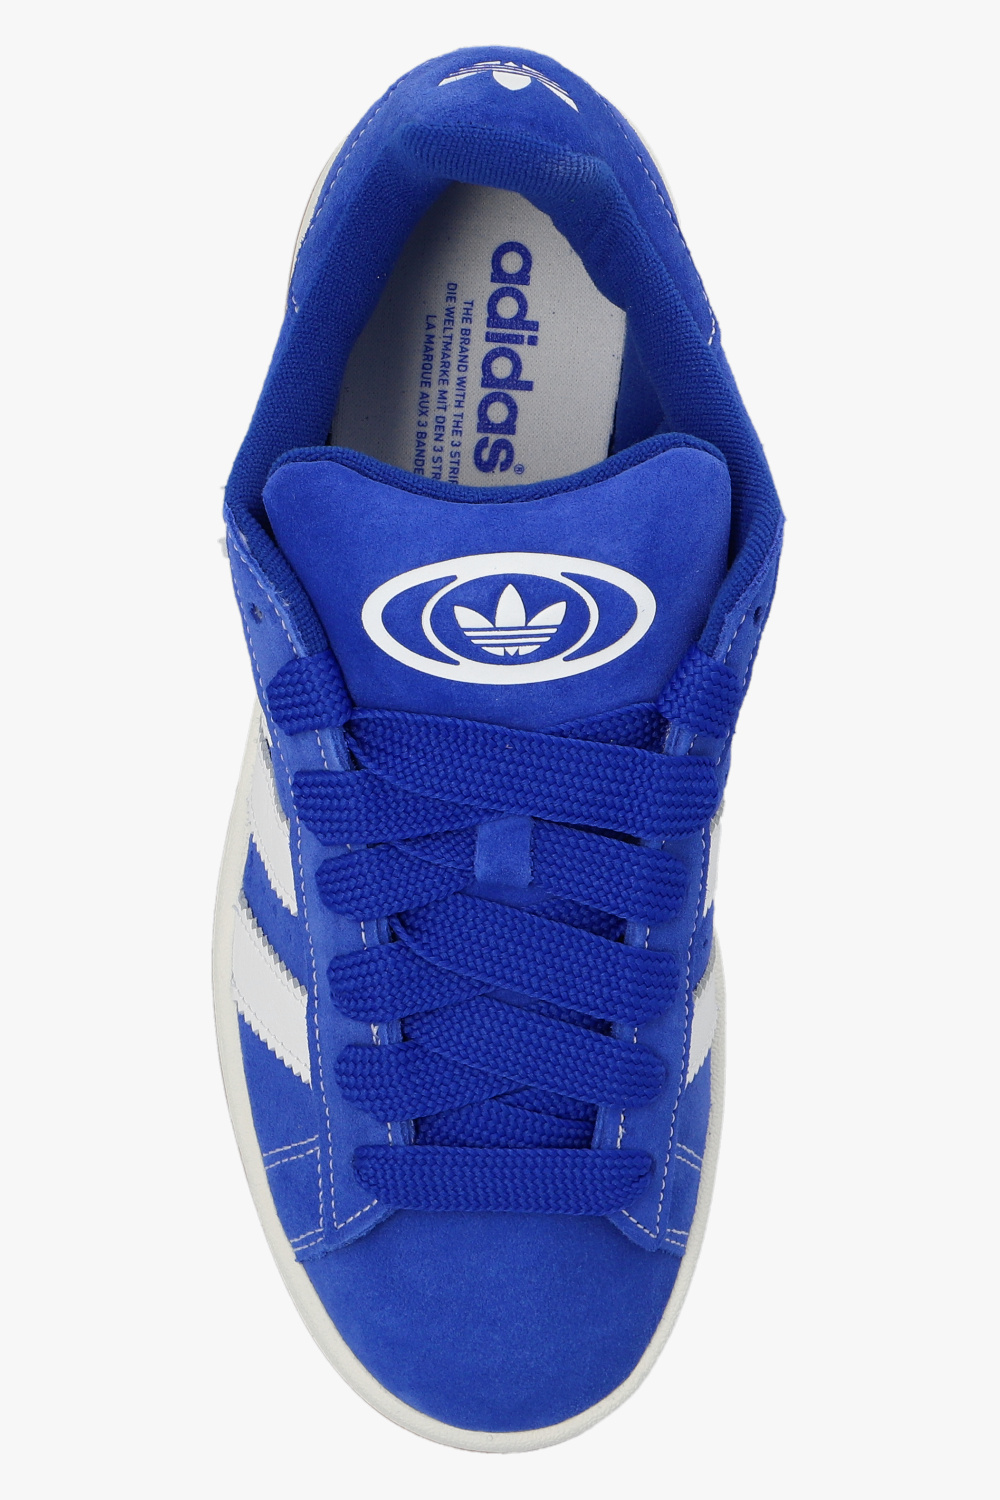 Blue 'CAMPUS 00s' sneakers ADIDAS Originals - Vitkac Canada